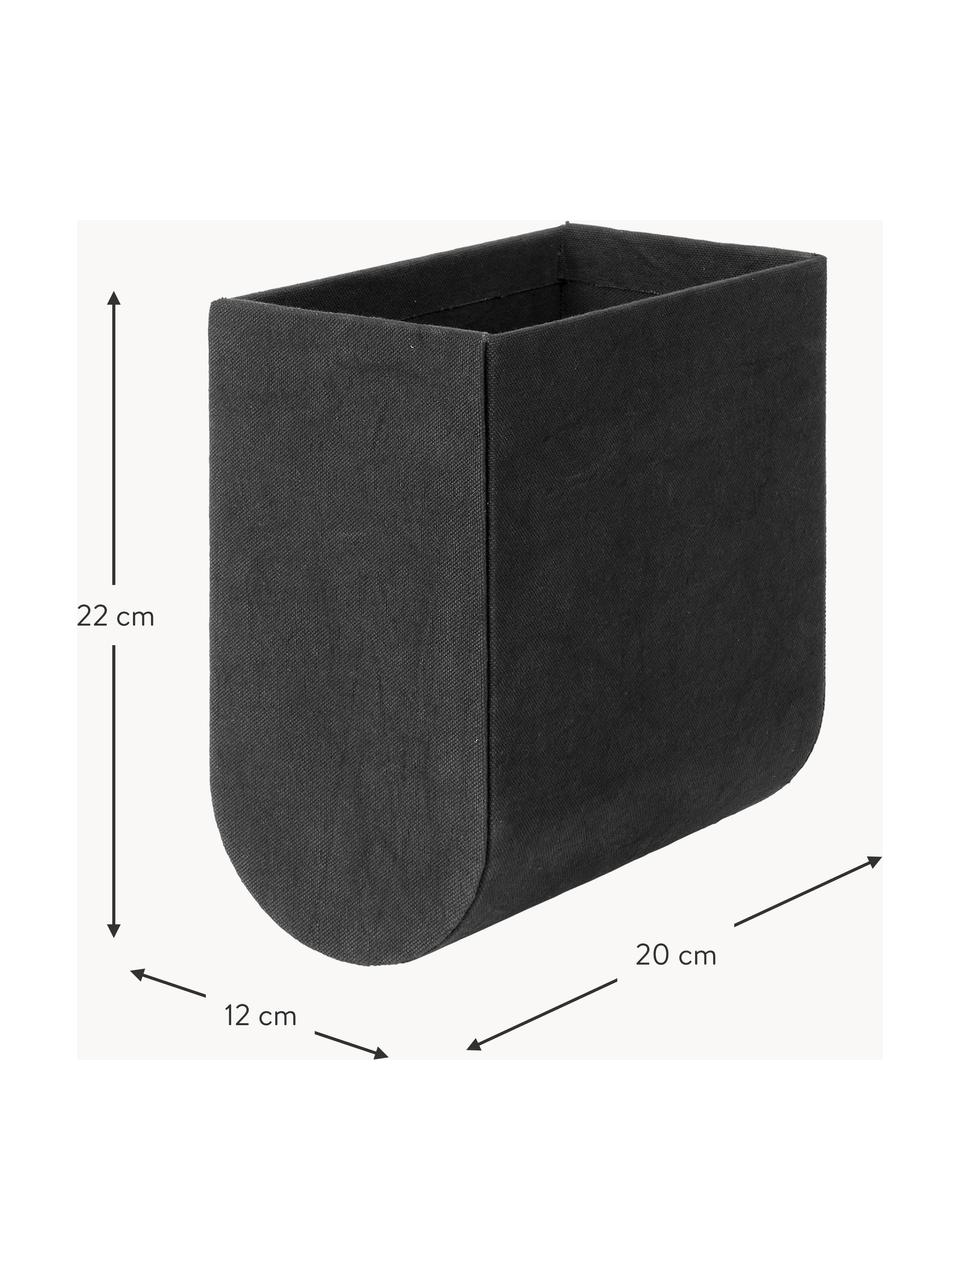 Handgefertigte Aufbewahrungsbox Curved, Bezug: 100 % Baumwolle, Korpus: Pappe, Schwarz, B 12 x H 22 cm